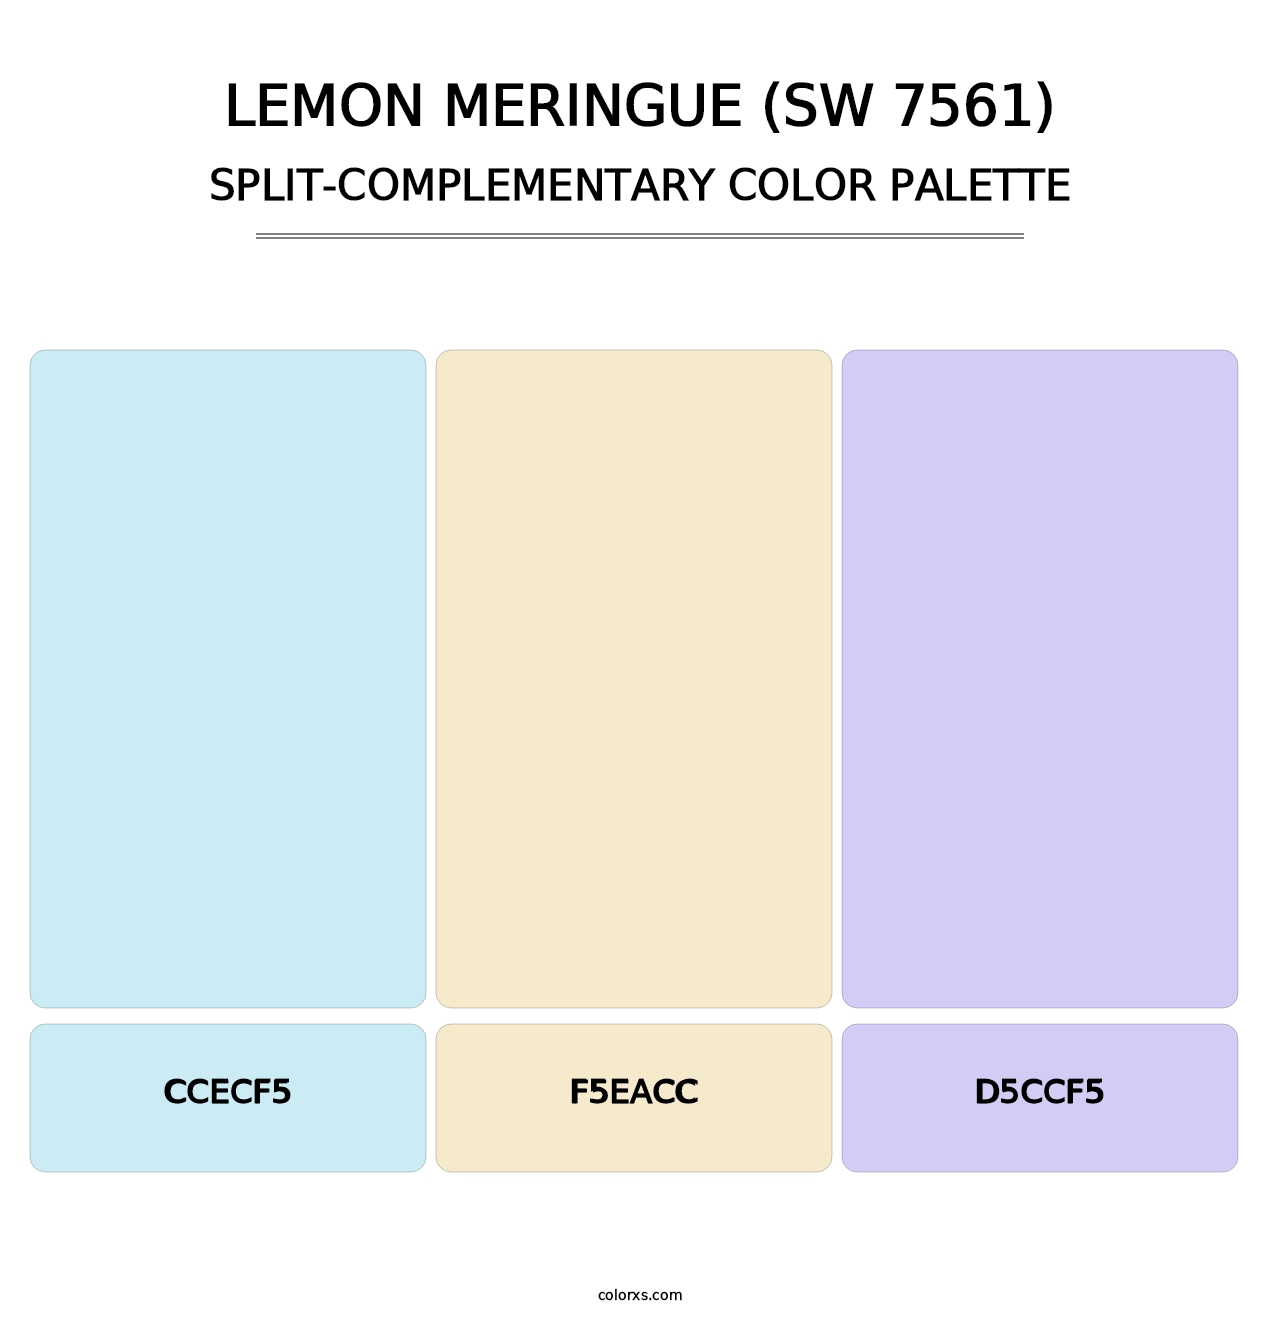 Lemon Meringue (SW 7561) - Split-Complementary Color Palette